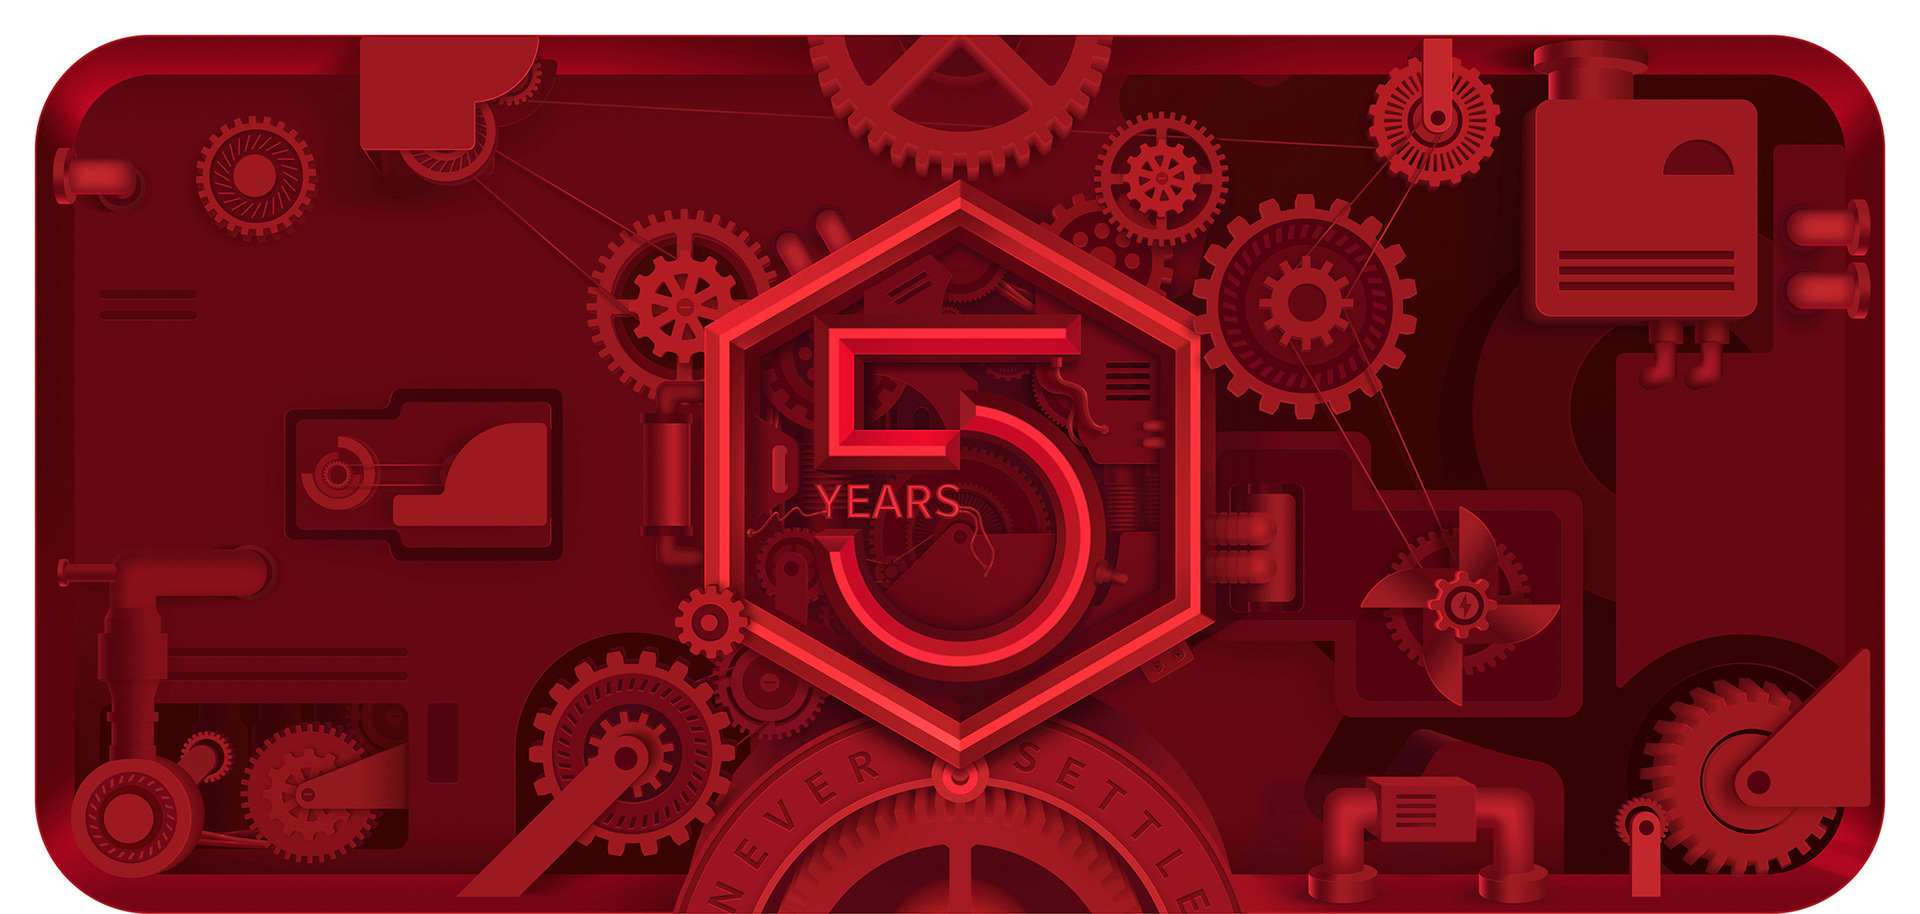 OnePlus 5th anniversary